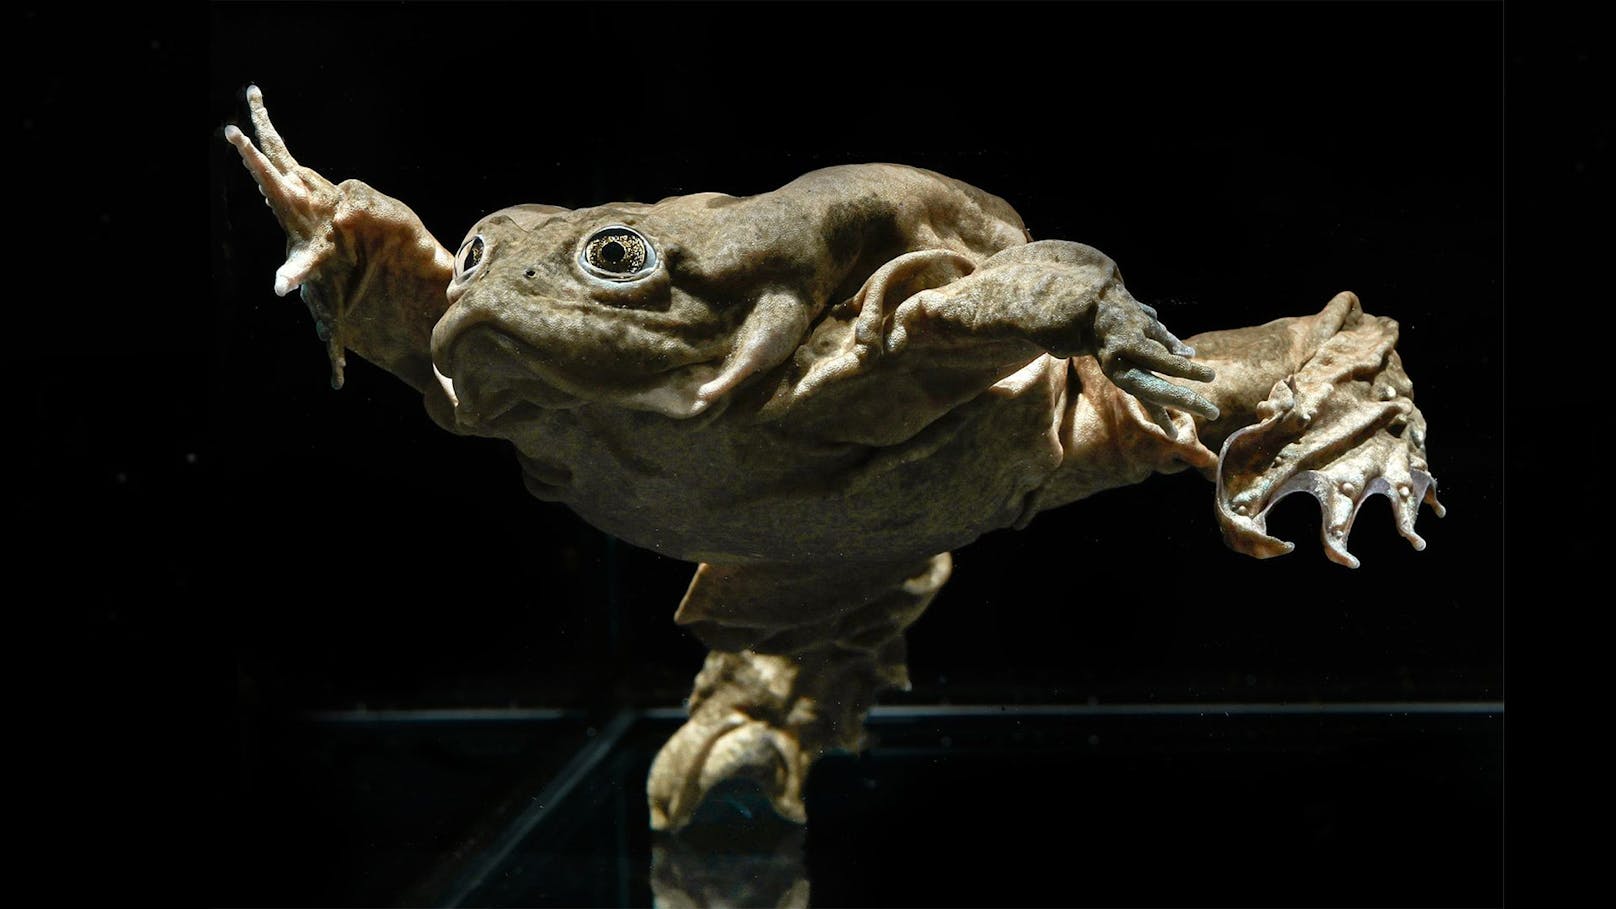 Besonderer Frosch trägt XXL-Haut zum Atmen